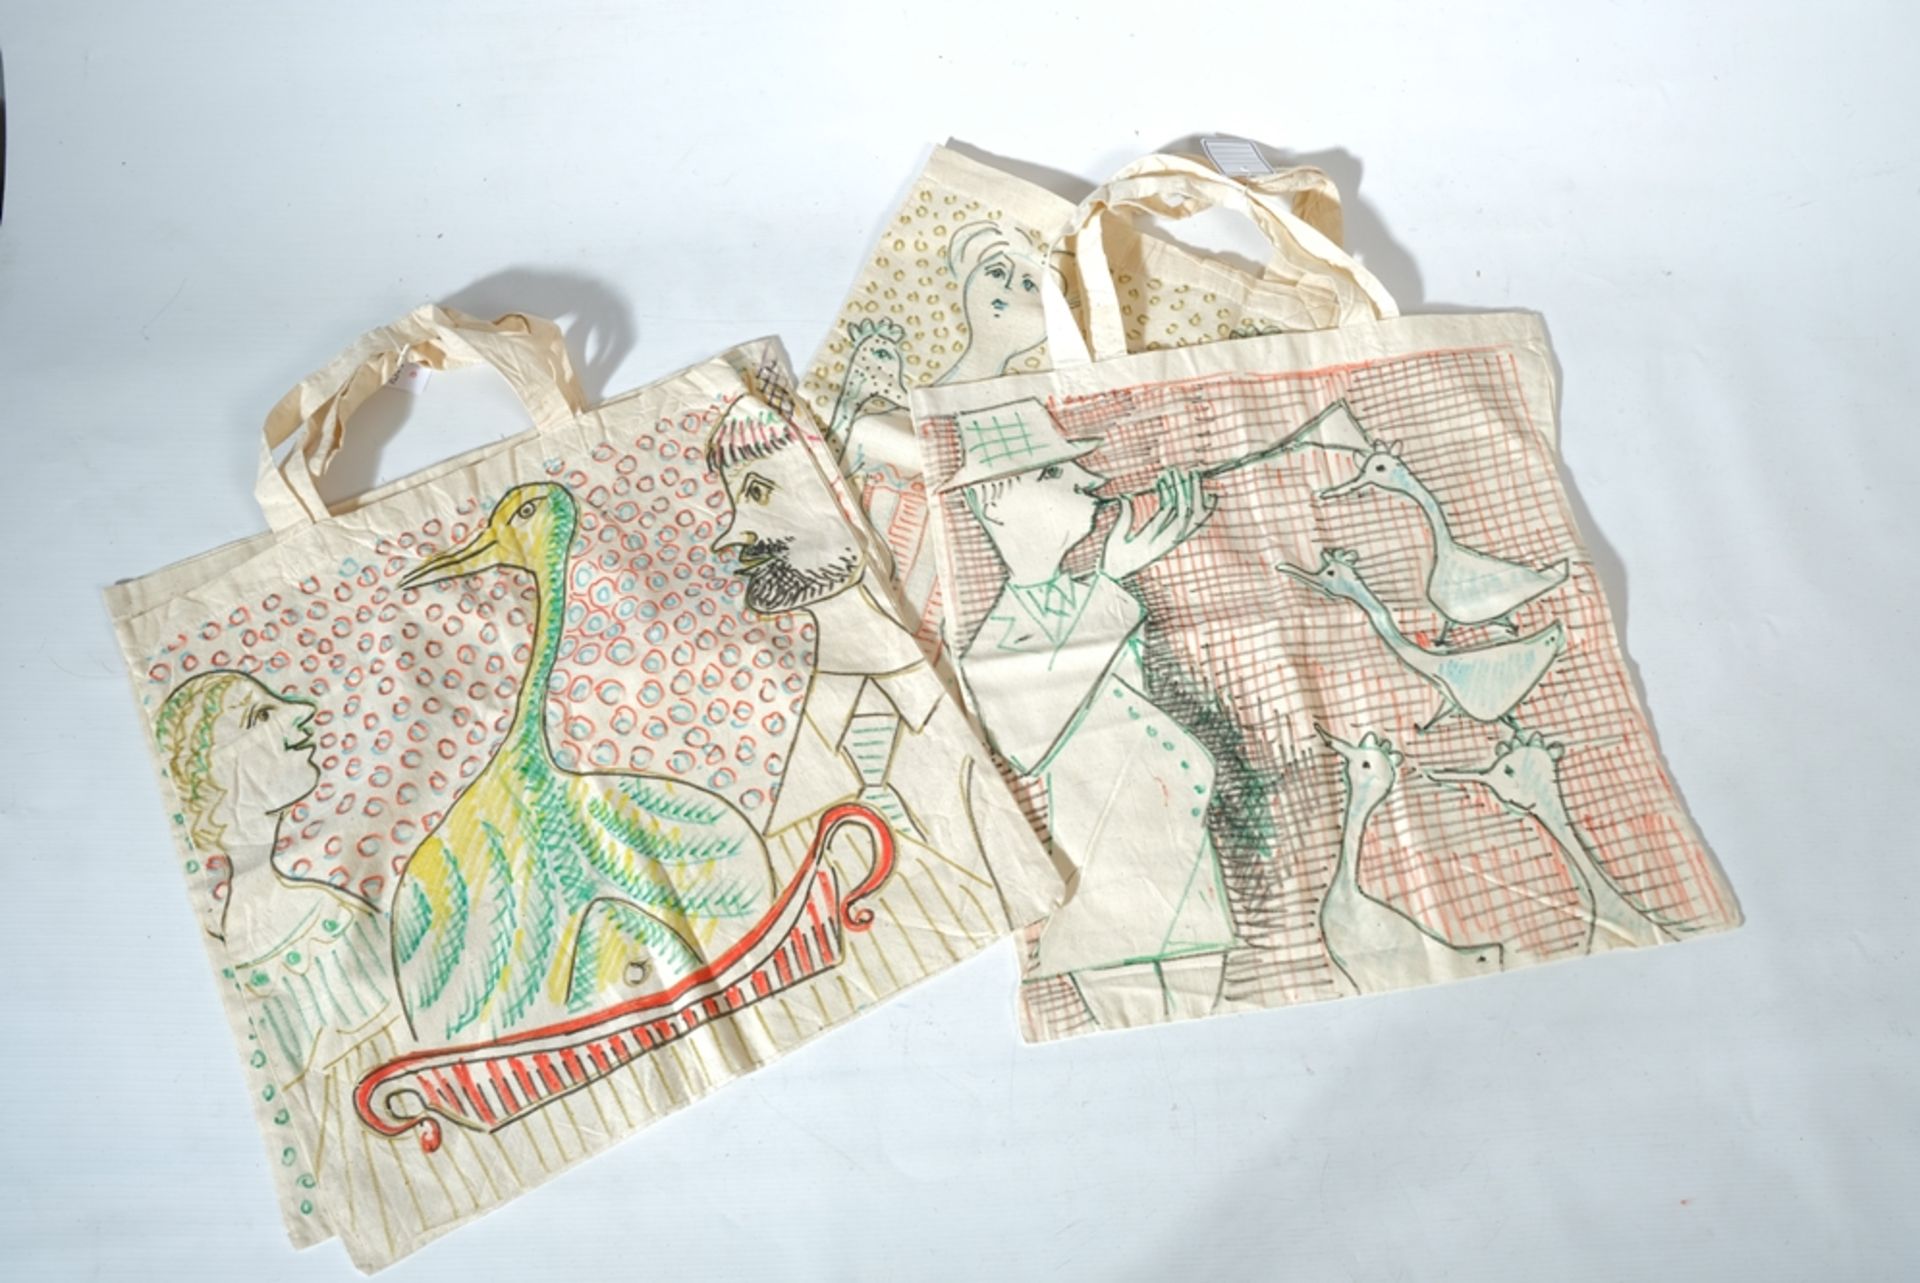 STUCKERT RUDOLF, vier bemalte Stofftaschen, schöne Taschen des Bodenseekünstlers Stuckert mit Gänse